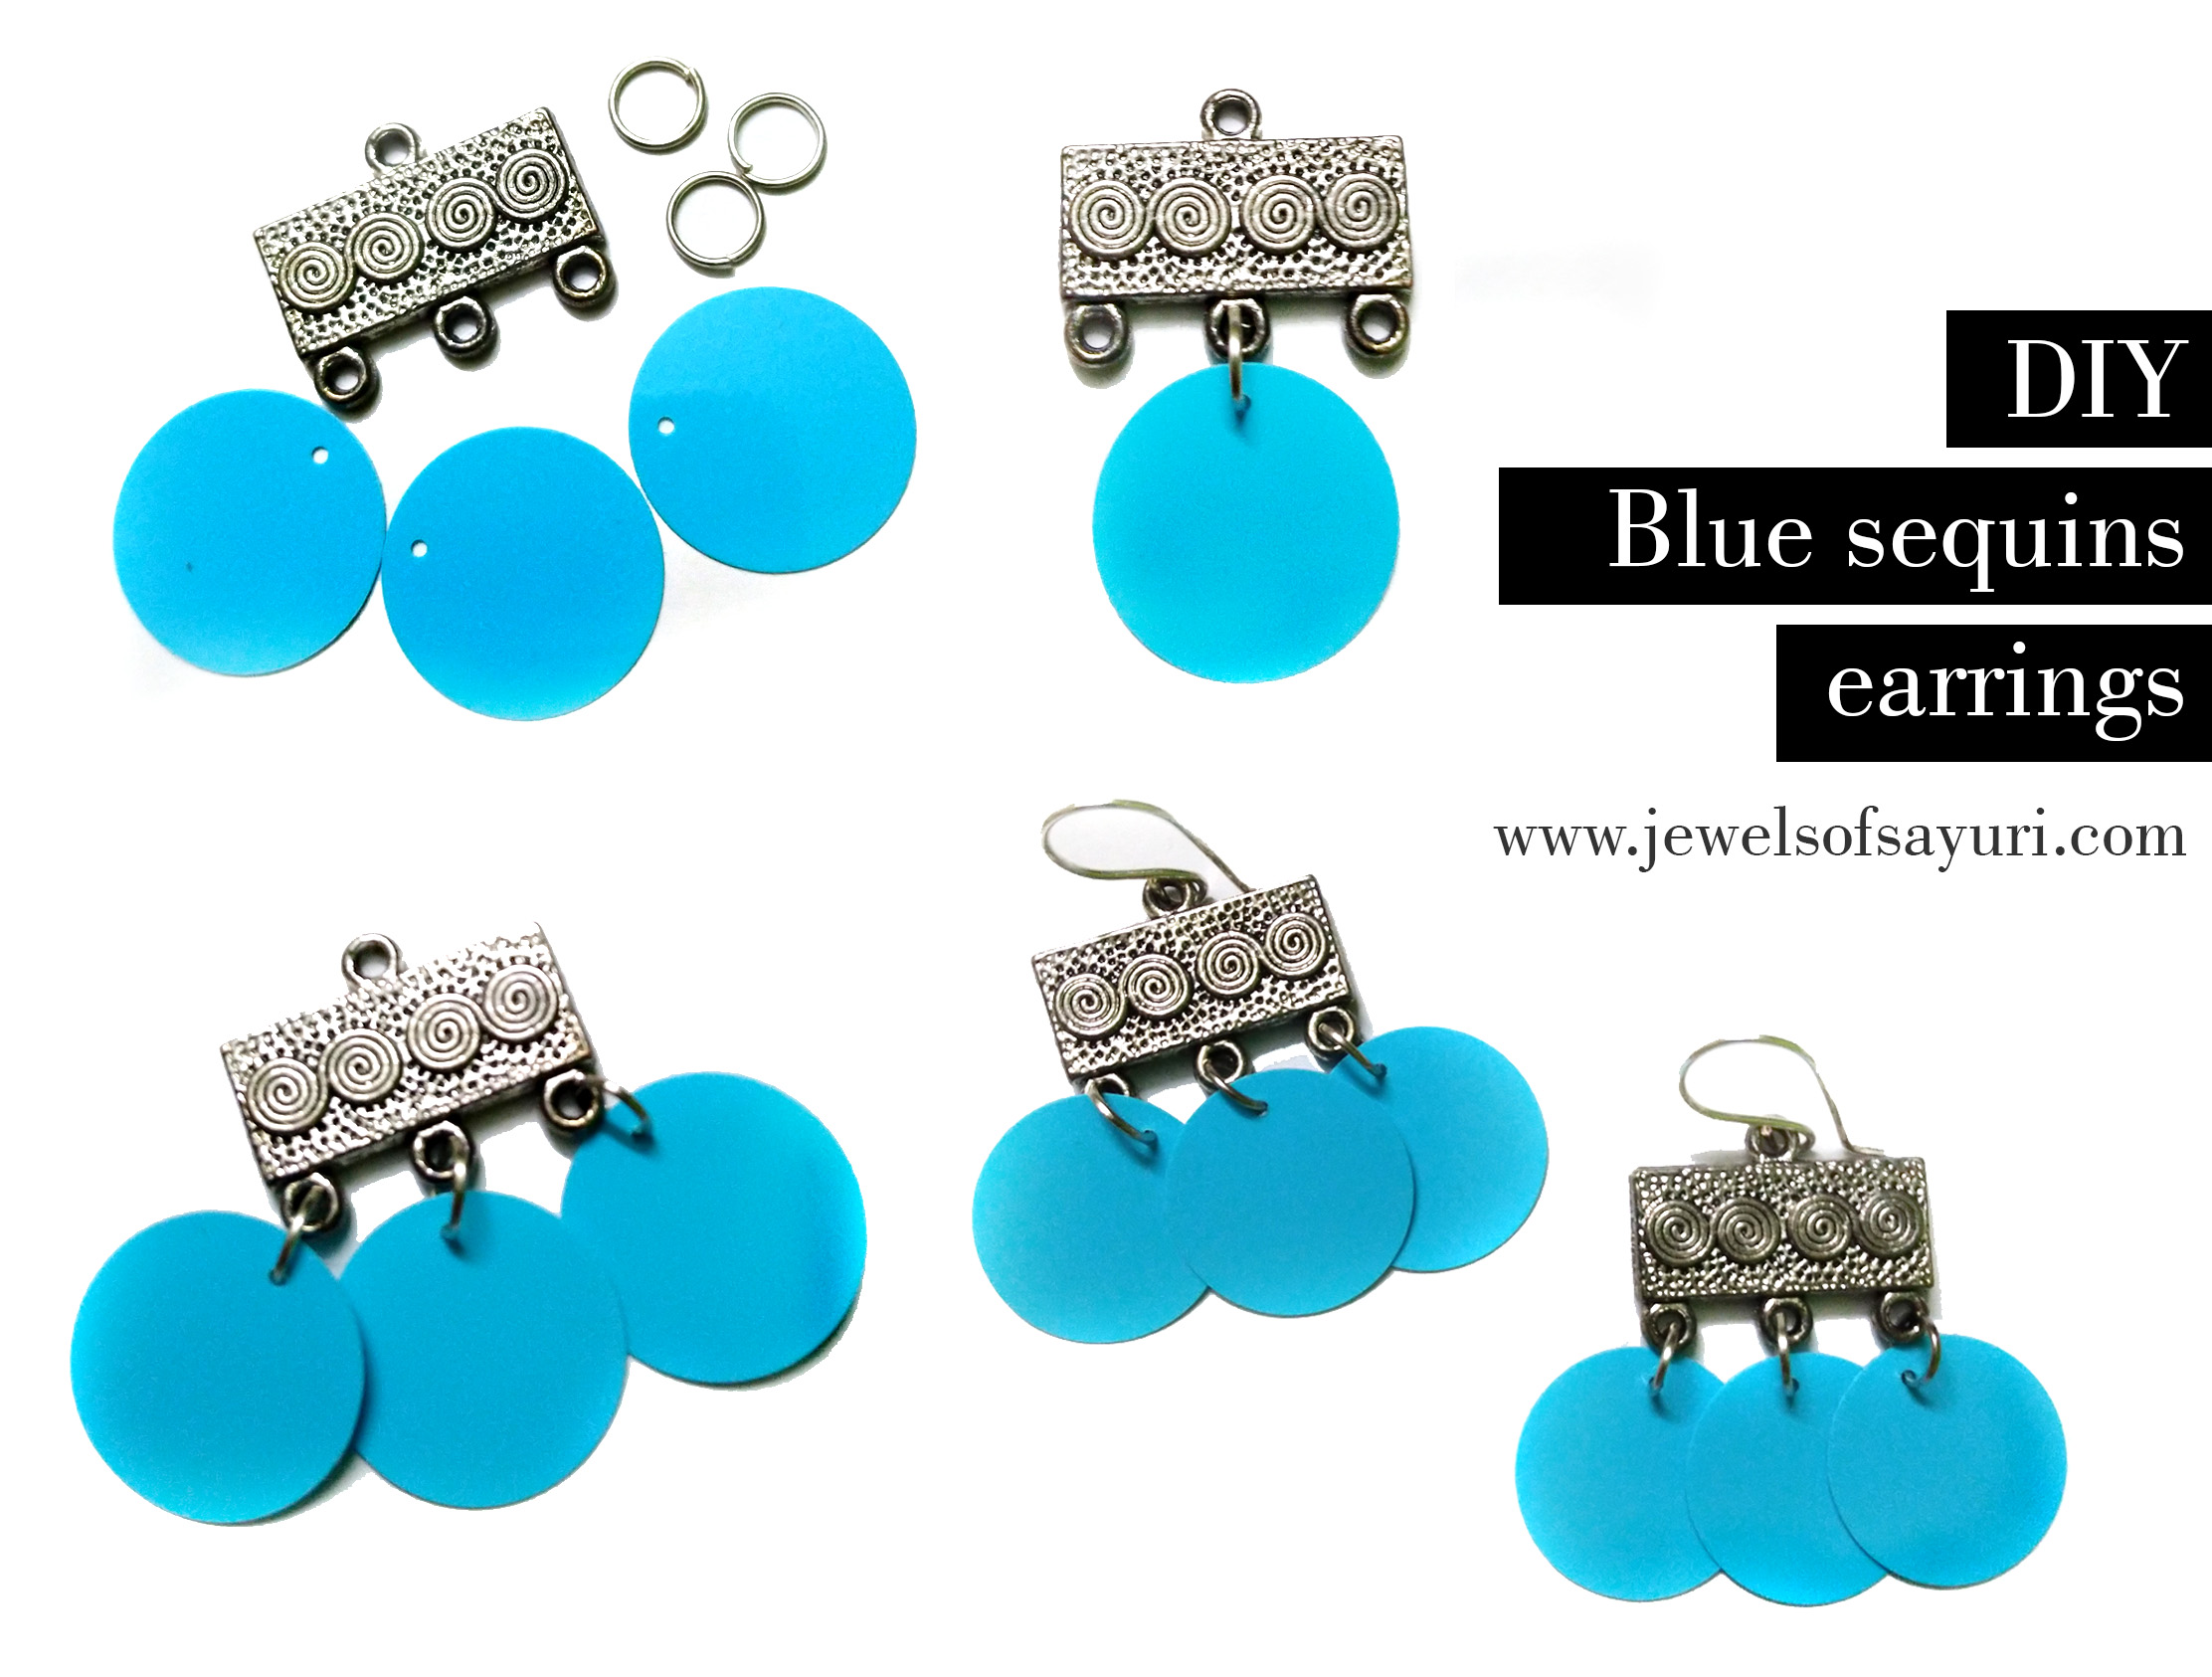 DIY blue sequins earrings